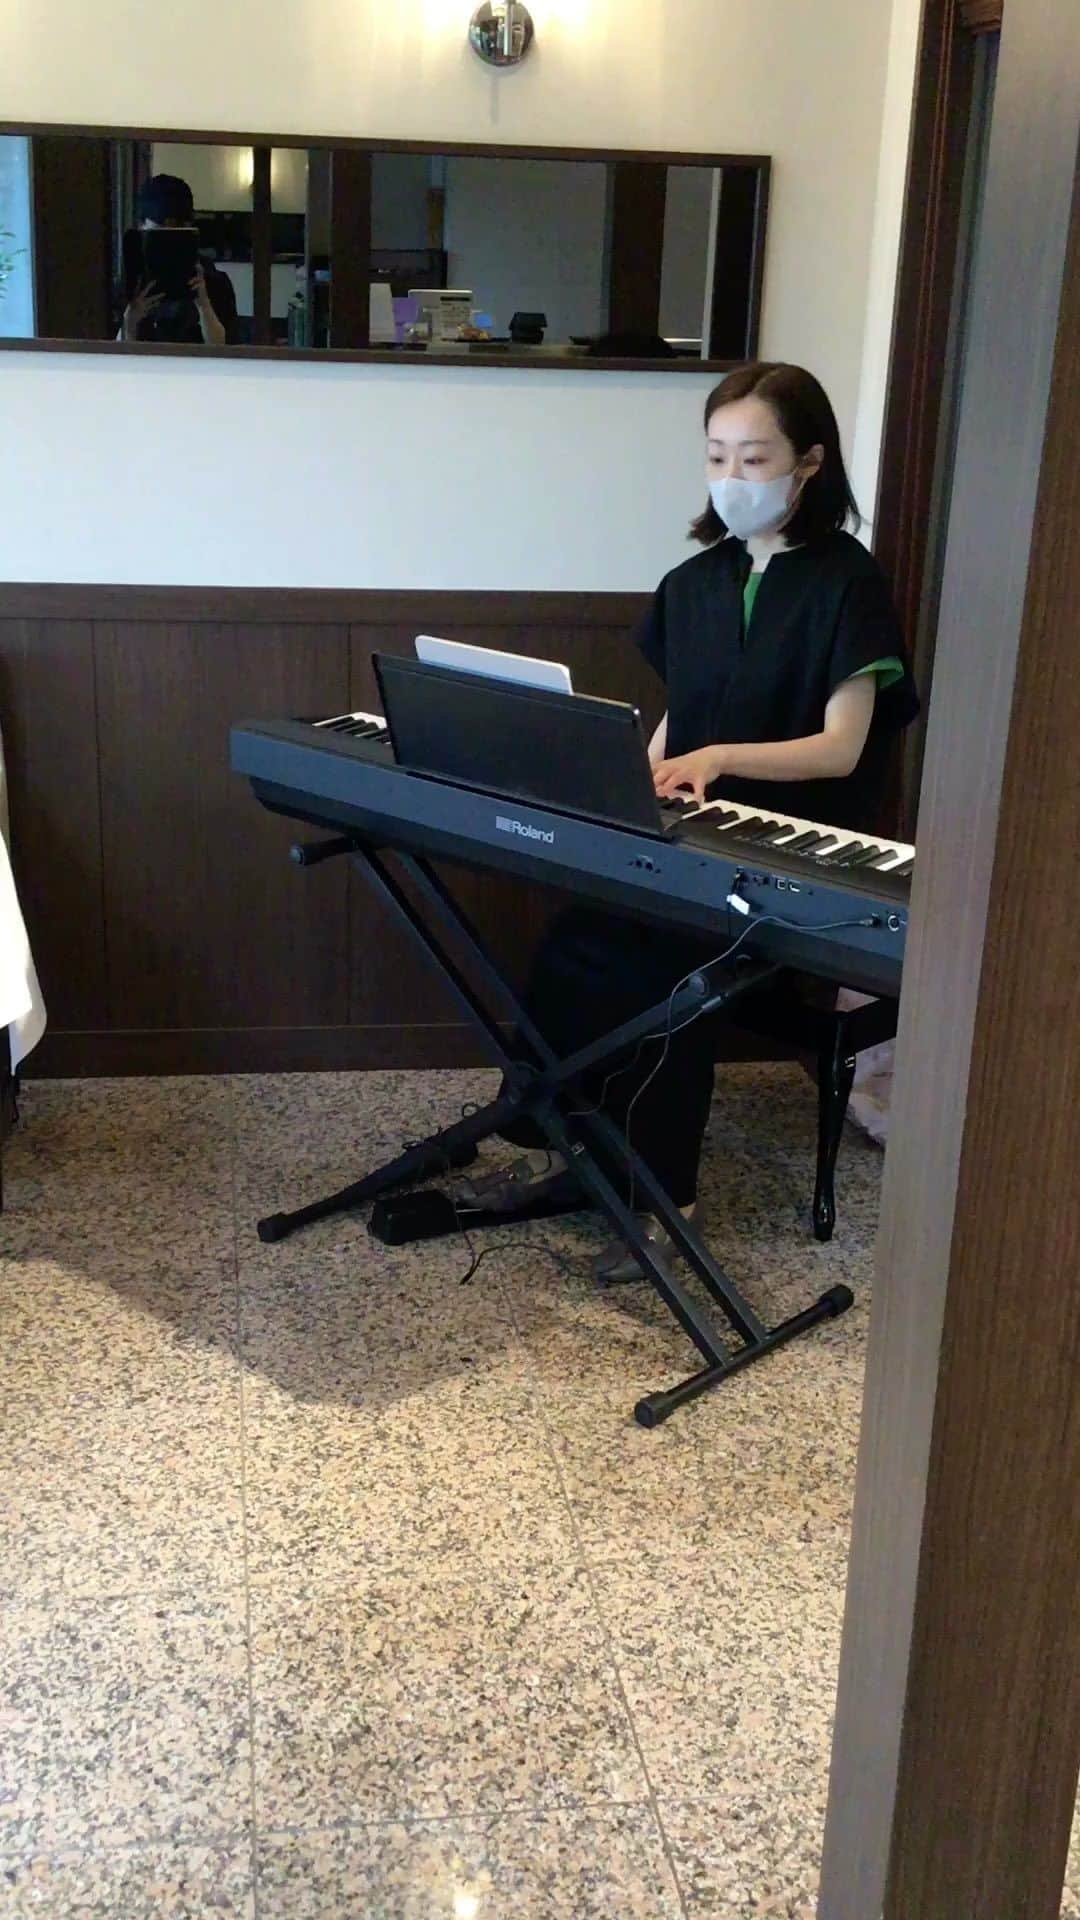 Salon de Royal Kyotoのインスタグラム：「皆様こんにちは☺︎ サロンドロワイヤル京都店でございます☀️ ・ ・ 本日14時半から、前田　絢葉氏によるピアノの生演奏がありました🎹 映像ではありますが、美しいピアノの音色をお楽しみくださいませ♪♬🎶　　 ・ ・ 毎週土曜日と日曜日に生演奏を行なっております。 優雅なひとときをお楽しみ頂けます✨✨ ・ ・ 店内ではケーキ、マカロン、ボンボンショコラをお飲み物と一緒に お召し上がりいただけます☕️🍫 ・ ・ 当店の営業時間は 11:00〜19:00（L.O18:00）でございます。 ご来店お待ちしております。 ・ 4月末まで川床工事中のため、テラス席はご利用いただけません。ご了承下さいませ。 ・ 3月21日以降ECサイトのご利用を停止いたします。ご迷惑をお掛けしますが、ご理解ご協力の程よろしくお願いします。  ・ #サロンドロワイヤル京都本店 #salonderoyalkyoto #カフェ #cafe #ケーキ #cake #キャンディーコートピーカンナッツ #お土産 #サロンドロワイヤル #京都 #京都スイーツ #ボンボンショコラ #京都カフェ #チョコレートショップ  #ショコラトリー #パティスリー #チョコレート #チョコ #ショコラ #chocolate #chocolat #chocolatier #salonderoyal #持ち帰り#ピアノ#ニ胡生演」